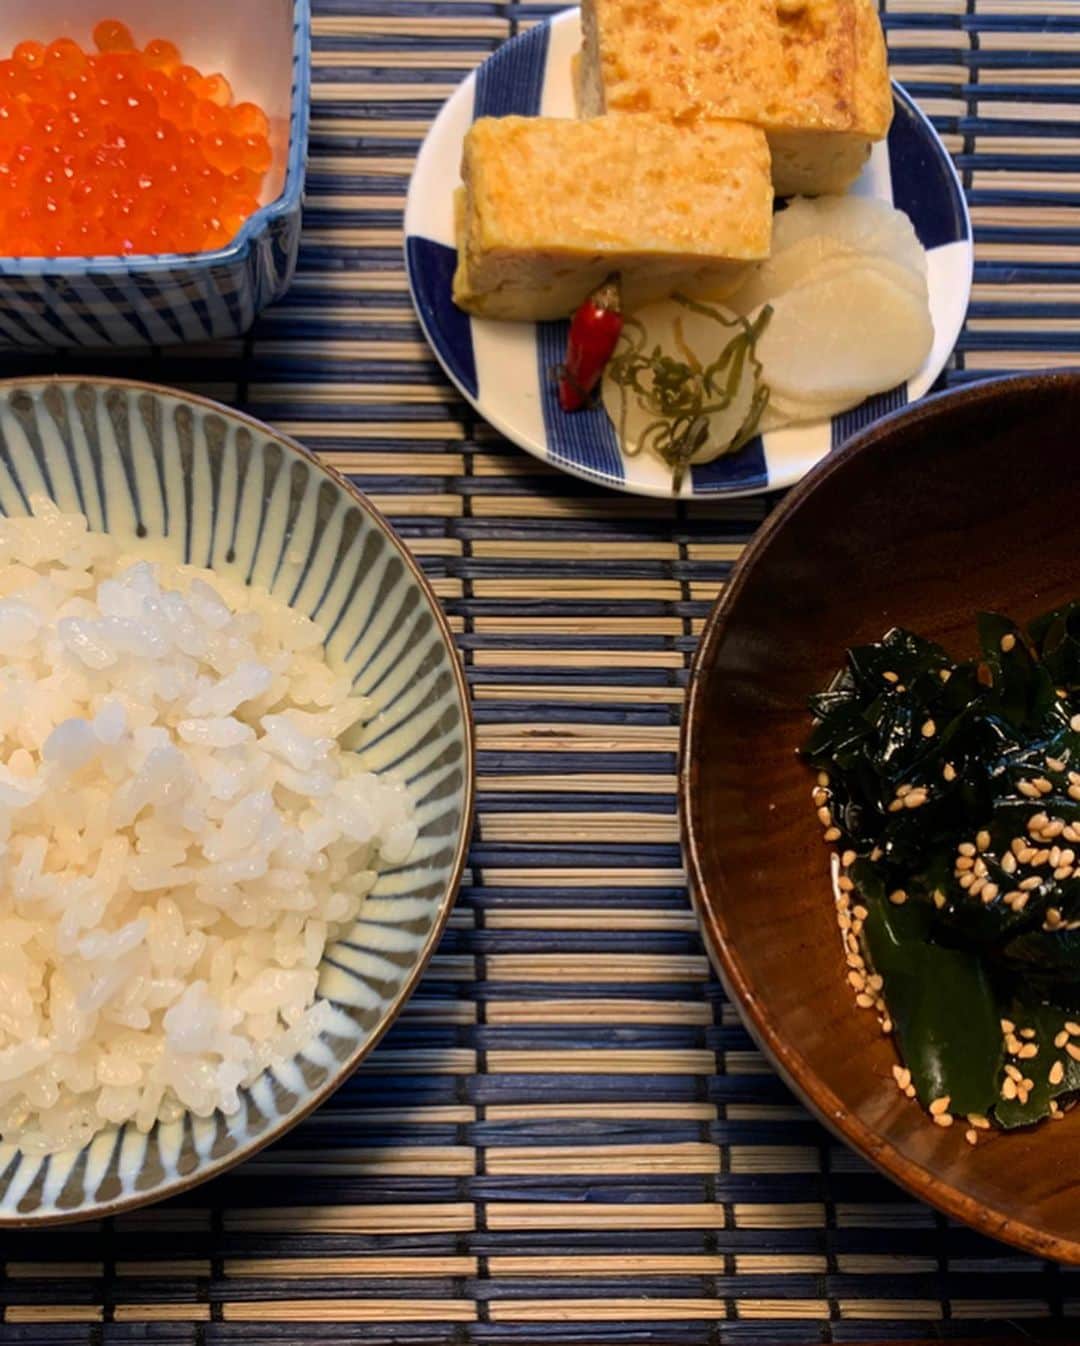 岡清華さんのインスタグラム写真 - (岡清華Instagram)「#和ーユルヴェーダ 👘 NYから戻ってきてからめっきり和食にハマっている私。  新しくリリースする商品/レシピを考案中で、ちょうど良い機会だったこともありますが、日本の食材を改めて見直してみるとやはり日本の素晴らしさを再実感。  アーユルヴェーダは5000年前から続くインド発祥の伝統医学…というと、 ☝️インドのものだから日本に合わないんじゃないの？ ☝️昔のものだから現代には合わないんじゃないの？ .  というお声を頂きます。 私はアーユルヴェーダと言うものは、命あるものが、協調し合って、全ての個々がより良く生きる為の "生活の知恵"。 ...まさに絶対的な自然の法則だと考えています。 .  その訳は、 物事は常に変動するもの。 そして、その変動に順応するべく術を教えてくれる知恵こそがアーユルヴェーダだからなのです。 .  インドと日本は、気候も文化も人種も性質が違う。だからその性質の違いを考えて、生活全てをその土地に、人種に合わせて考える。  また、時代に合わせて変わりゆく環境にも、どのような性質に変化しているかを考え、バランスをとり順応できるように考える。 .  5000年もの深い歴史の中で継承され続けていた伝統医学は、このように幾つもの形を変えて、時代に、国に、人に、全てに順応して、その全てとの調和関係を保ってきました。  私達現代人が持つ不調和を解消するには、この極めて本質的な自然の法則を理解することで、調和へのカギだと信じています。 . .  1枚目は、遅くなった日の晩御飯。 @alohafarm さんの爆笑米、@bugrassfarmers さんの放飼玉子を使った雑炊。  大分県の干し椎茸を、納豆のおじいちゃんのお店の醤油ときび等で煮ただけの椎茸の煮付けがトリュフ以上に美味しく驚愕。この椎茸の戻し汁と岩塩だけでお粥をつくりました。高菜と千枚漬けは、京都からのいただきもの。  消化を高めるために、このお椀を食べる前に生姜1スライスに、岩塩とレモン汁をかけたものをよく噛んで食べました。(消化促進のアパタイザー) .  2枚目は、 上記の食材でアレンジした次の日の昼御飯。卵焼きにワカメを入れました。爆笑米は、爆笑してしまうくらい美味しい。そして、椎茸は一晩寝かせたら味が染み込んでまたトリュフ感がでていました。  3枚目は、またまた頂き物の、新鮮なイクラ。ワカメは、先日の椎茸の煮付けの汁で戻して、その上にオリーブオイルをかけました。魚卵は海藻と合いますね。 . . . . . ...など、一つもこだわらない食材、調味料など一切ないと胸を張って言えるほど、全て天然で、生産者さんの想いが込められた感動の食材ばかり… 材料そのものがパーフェクトなものばかりだと、外食するよりも家で食べる方が遥かに感動と染み渡る美味しさと、食後の快適さ、湧き上がるエネルギーを感じます。  これらは頂き物以外全て、@farmersmarketjp にて出会ったものたちばかり。生産者さんと繋がれるこの素晴らしい機会のお陰で、私は食や生活がどれだけ豊かになったでしょう？  都内の中心に住みながら自然と調和したアーユルヴェーダの生活ができるのは、青山ファーマーズマーケットのお陰だと言っても過言ではない程感謝しています。 . .  私は食事を薬代わりに取り入れているので、食材に最もこだわりをもち、良い食材を手に入れるために、一番に時間とお金とエネルギーを注ぎます。  なぜなら食べているものが私達の身体と心と思考とエネルギーを作り、選択と決断と持久力に影響し、生活全ての基礎となり心と体の状態が決まり、その状態での毎日の繰り返しにより人生が決まるからです。 .  これ以上に、お金と時間とエネルギーをかけるべきものはありません。あとは睡眠と、頭も体もよく動かすこと。それだけのシンプルなことで人生が確実に輝くという本質を知っているからこそ、この根本の土台を作るに限るのです。 . .  土台を作れば、そのあとはエスカレーター式に全てがコントロールされていきます。  食事、運動だけでなく、ビジネス、人間関係… 人の営み全てを解く、生き方の本質を教えてくれるアーユルヴェーダ。  様々なシーンに活かせば活かすほど面白く、更に他にも活かせるようクリエイティビティを与えてくれる素晴らしき知恵🙏  #ayurveda#アーユルヴェーダ#日本#和風#和食#和#調和 #米#晩御飯#定食#献立#レシピ」2月27日 0時29分 - okasaya